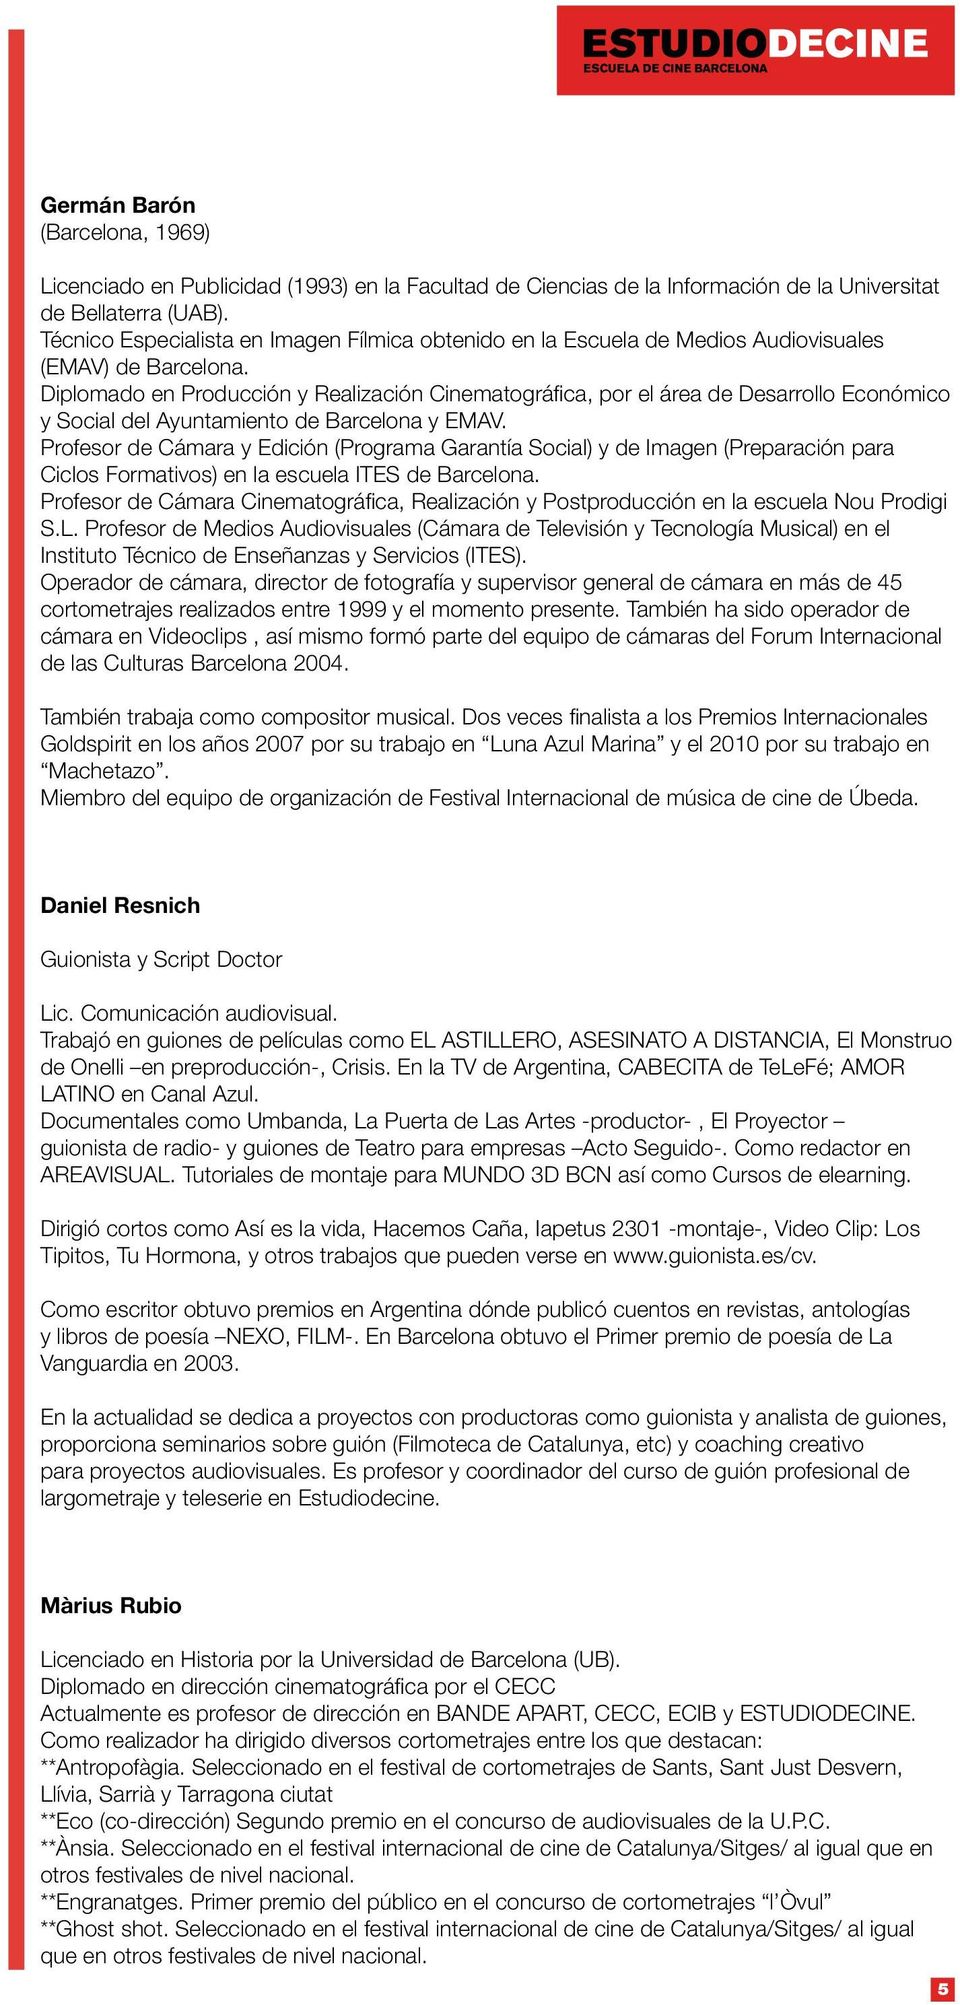 Diplomado en Producción y Realización Cinematográfica, por el área de Desarrollo Económico y Social del Ayuntamiento de Barcelona y EMAV.